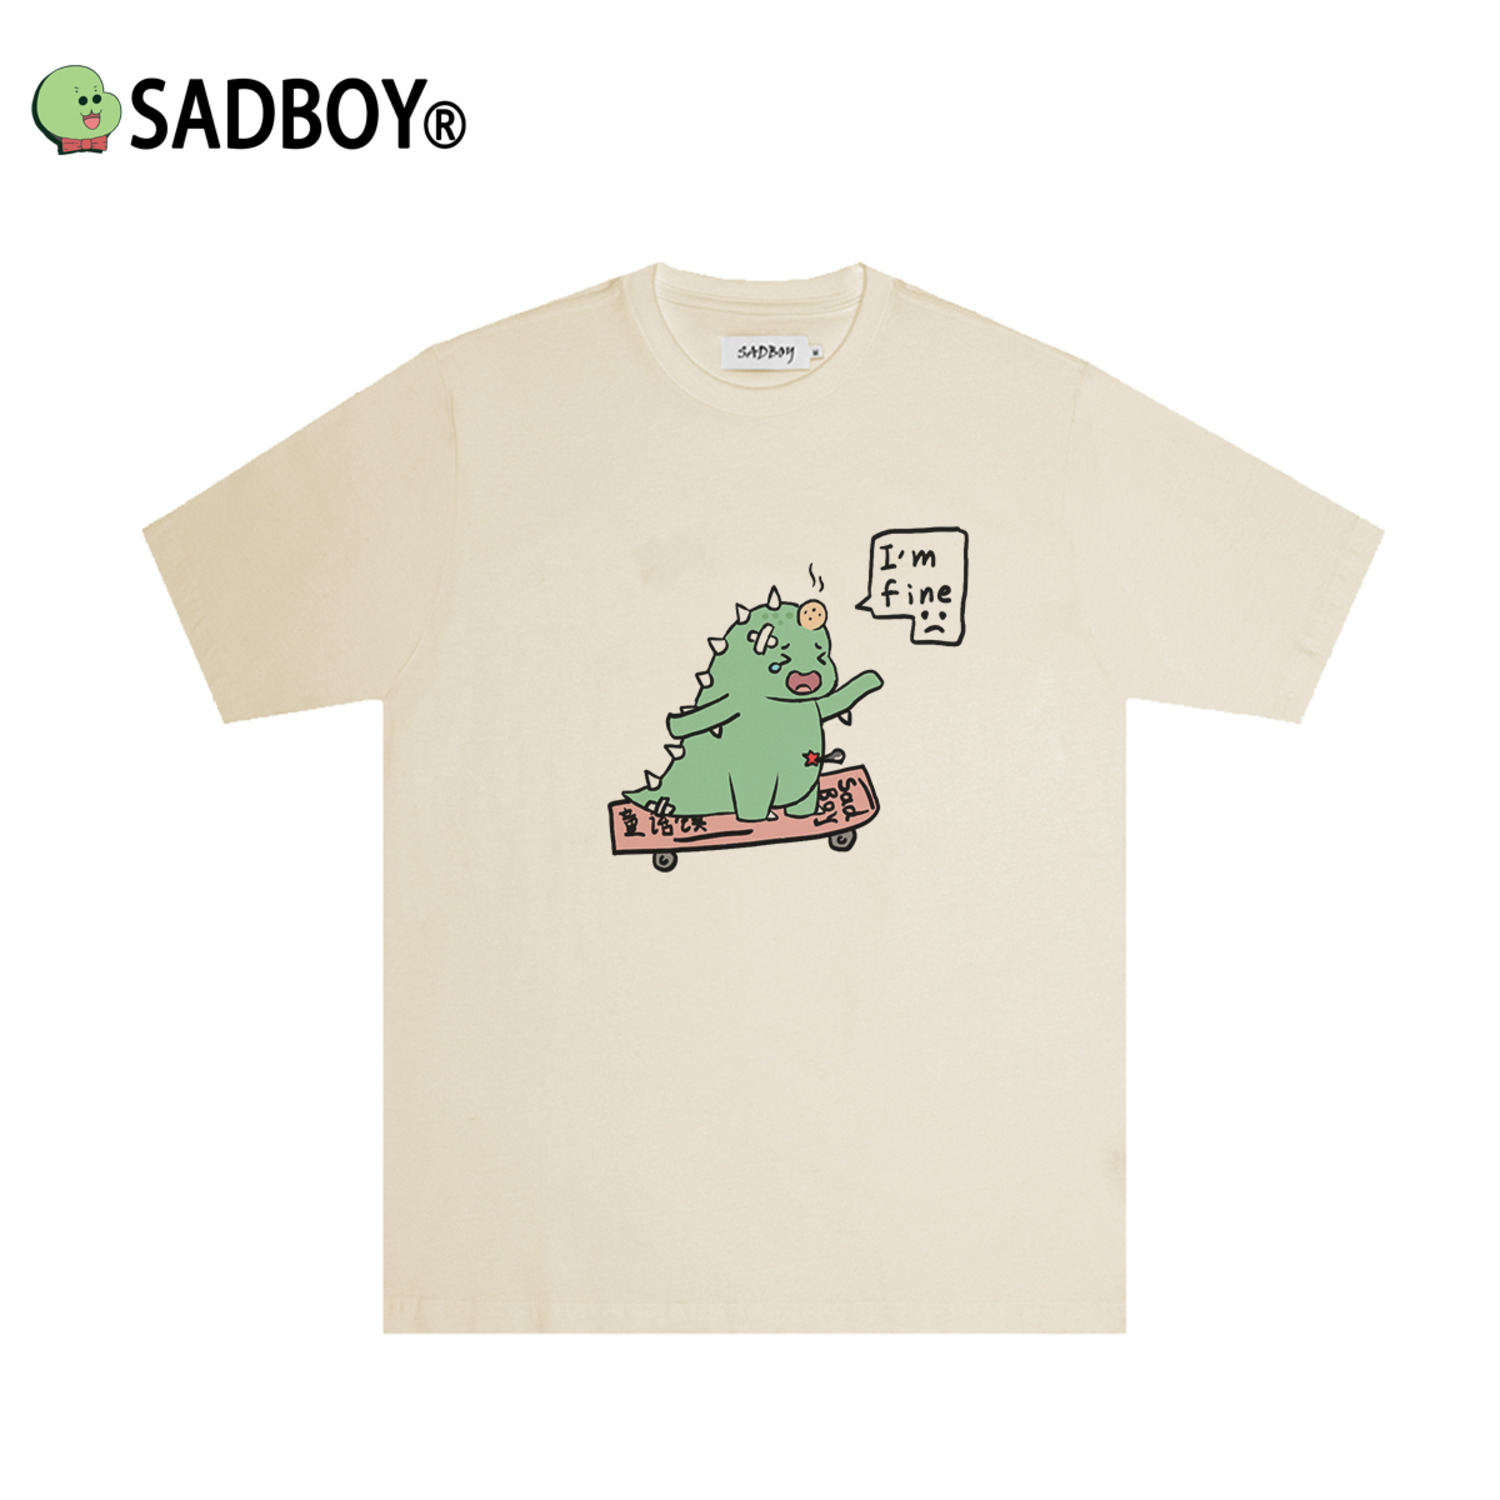 sadboy PrinceBlog小怪兽联名可爱印花新款情侣百搭宽松潮短袖T恤-3